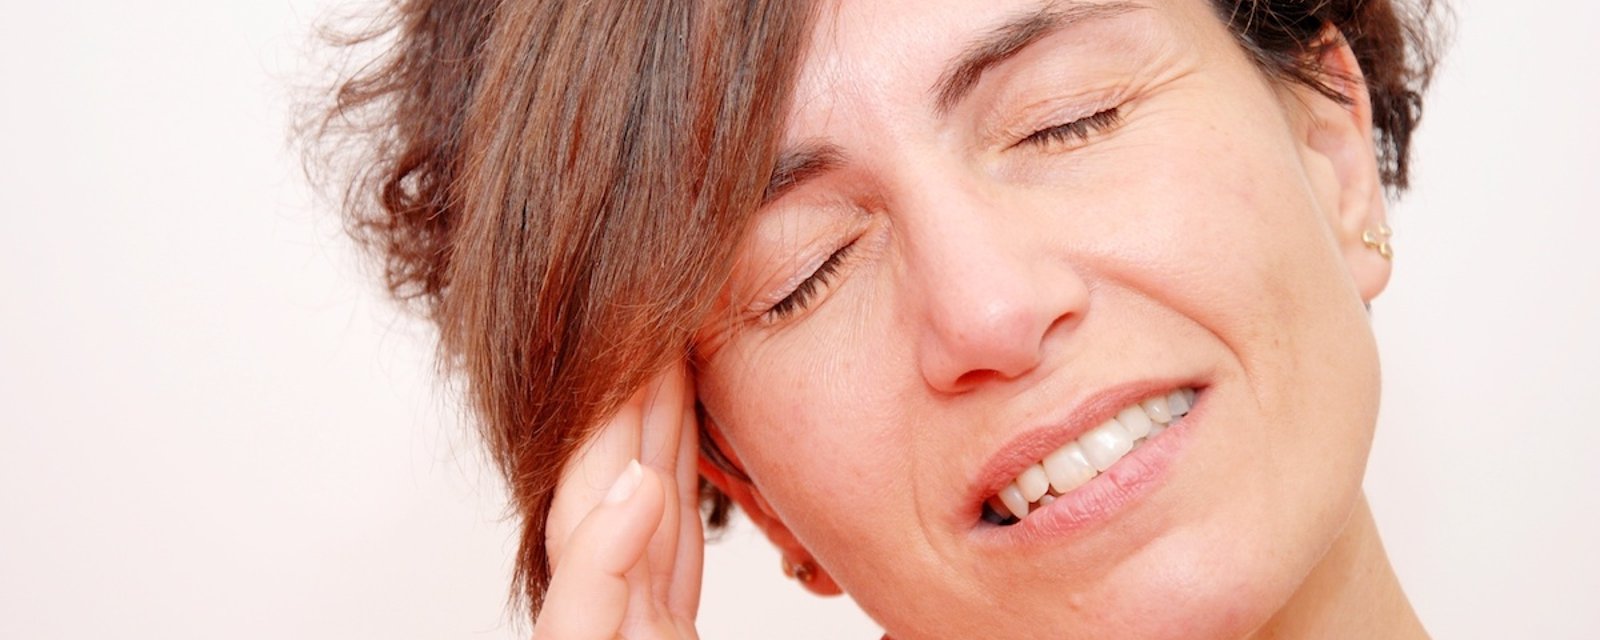 6 signes que vous souffrez d’une infection à l'oreille 